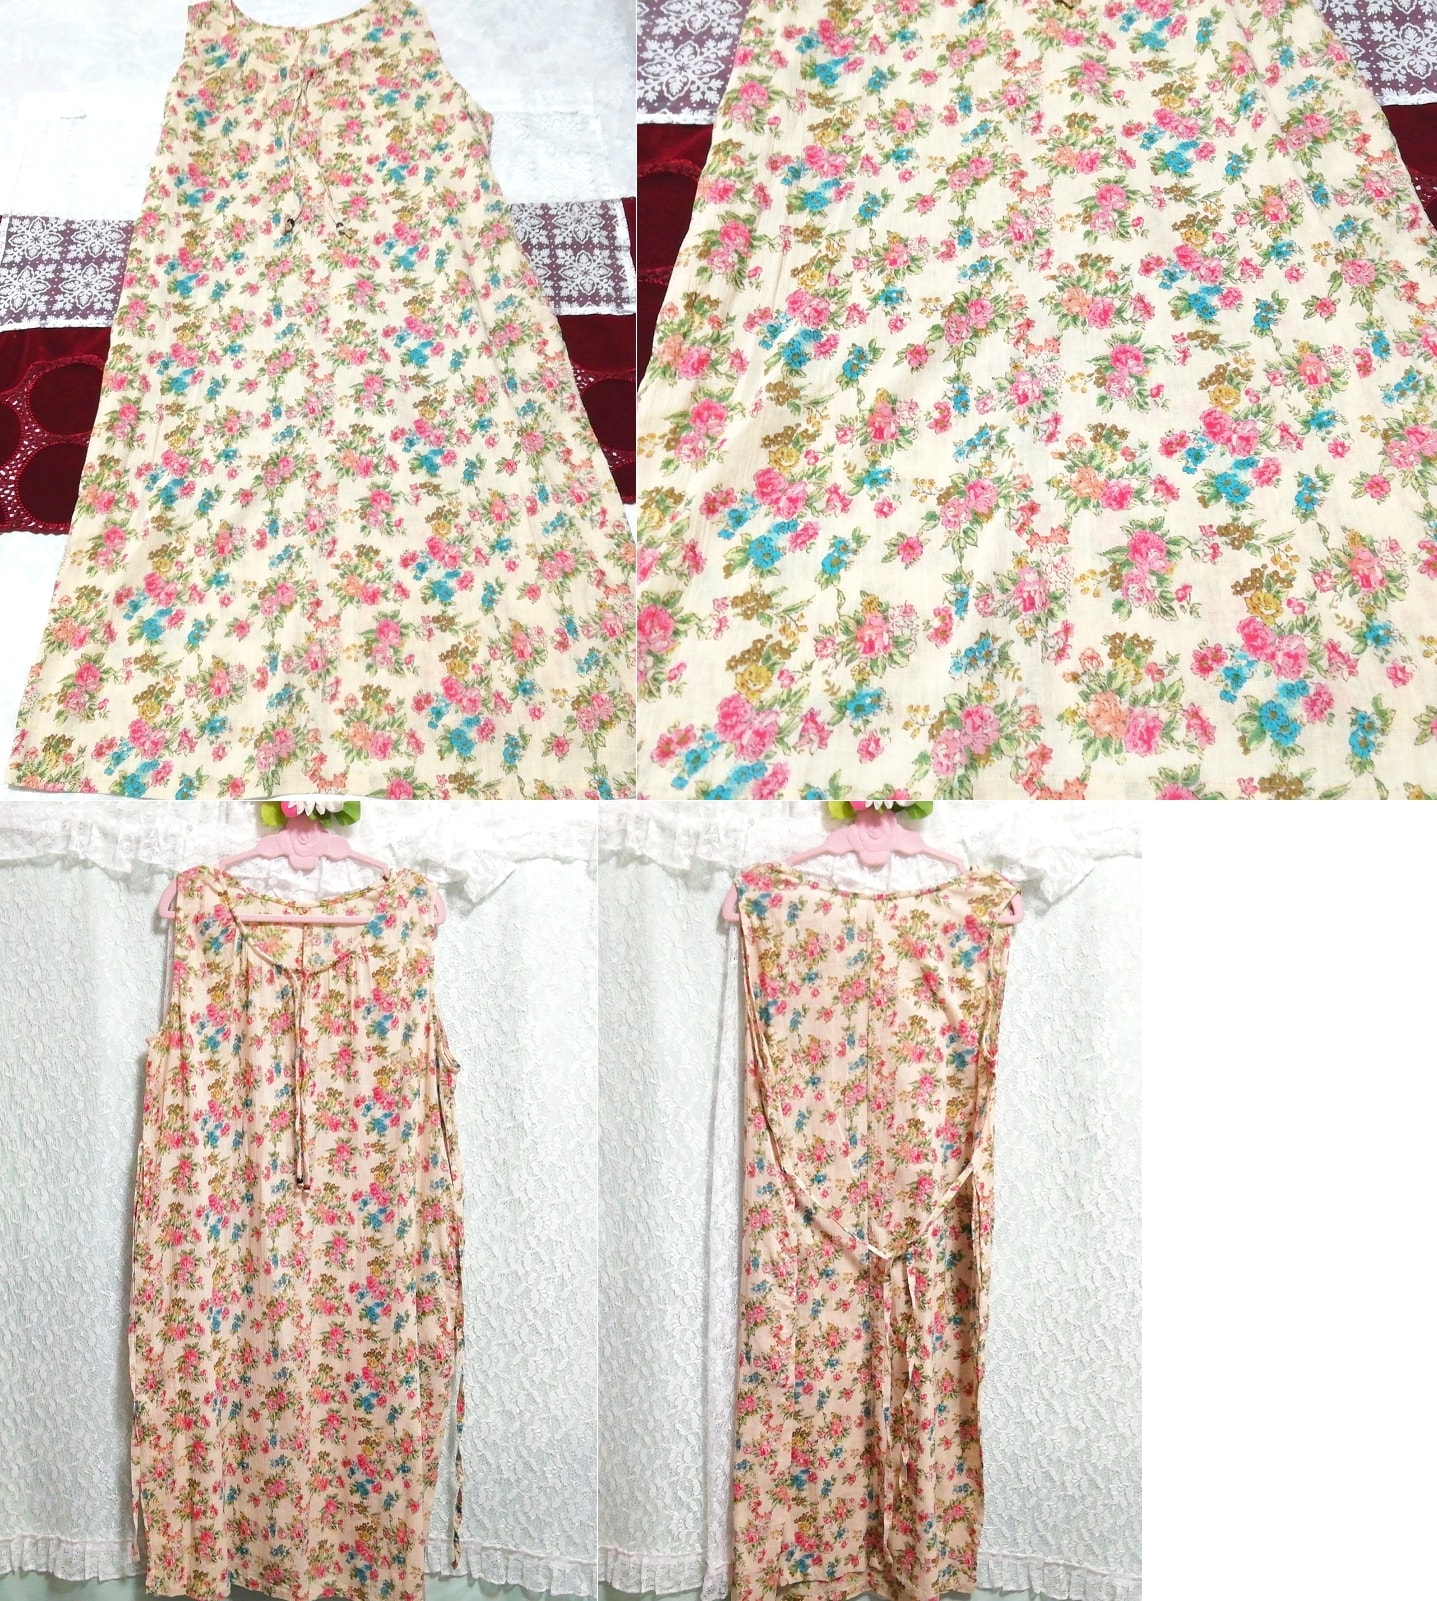 Vestido largo camisón bata de algodón sin mangas con estampado floral de lino, falda larga, talla m